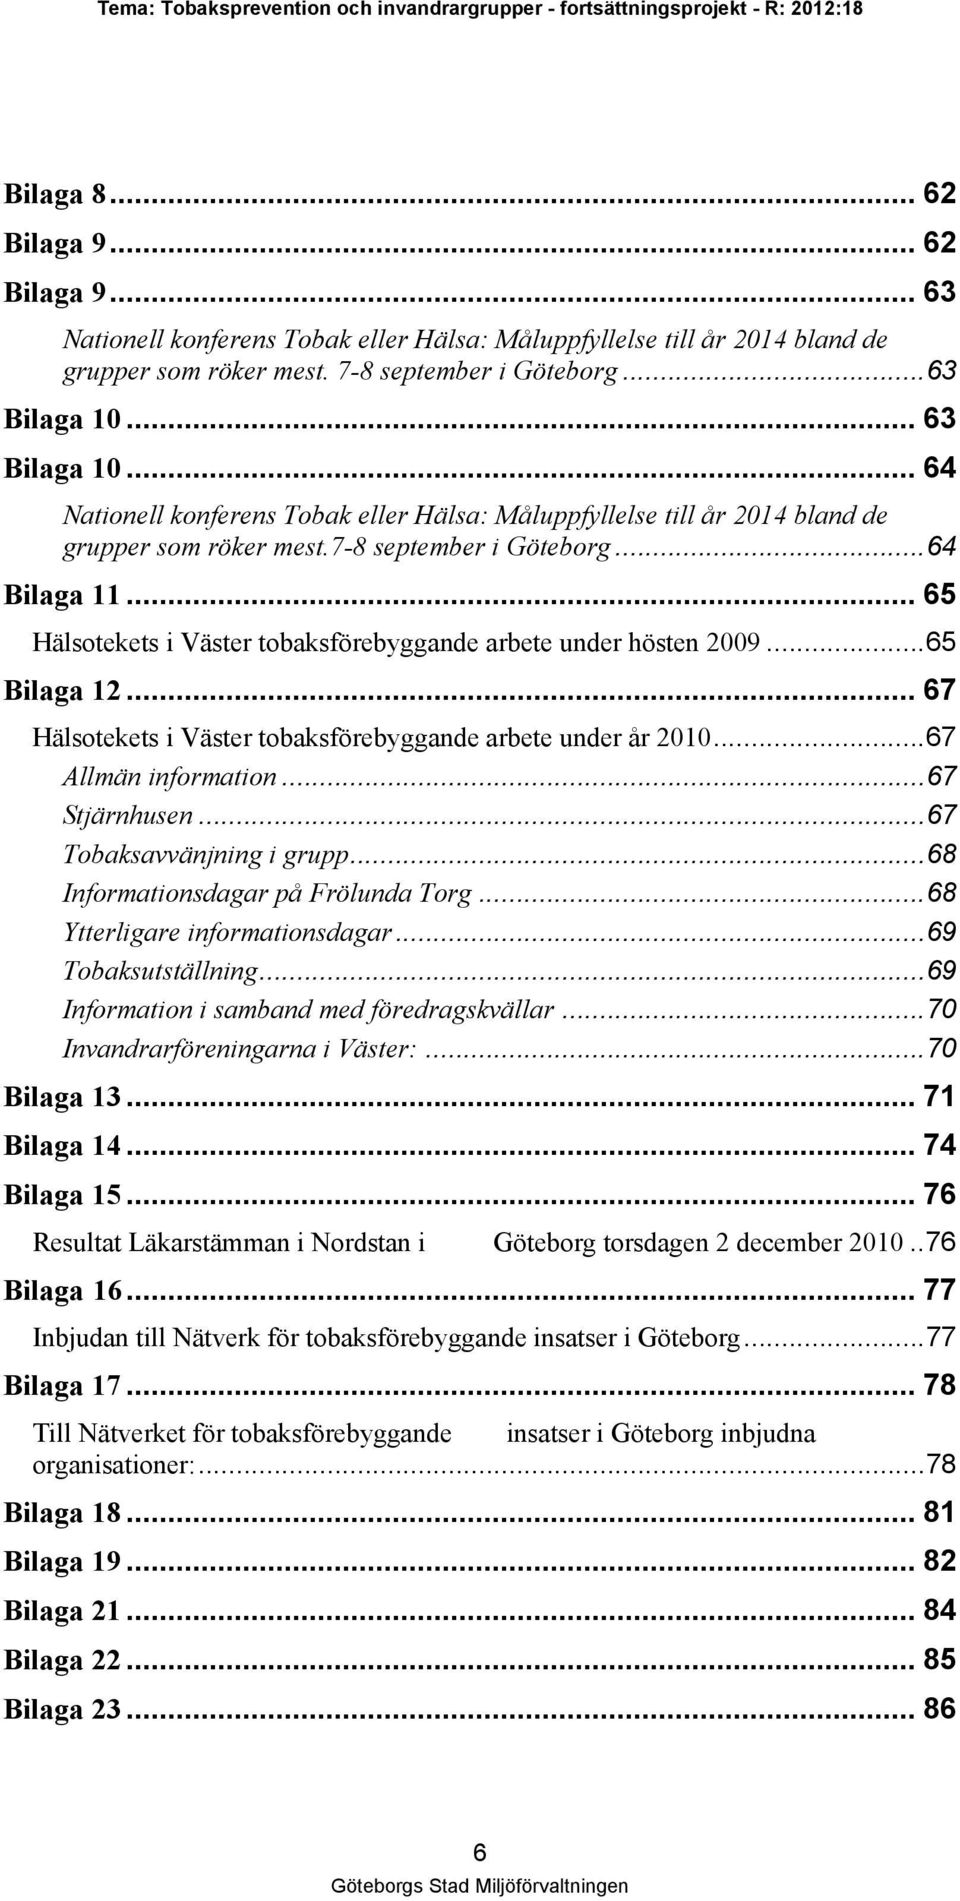 .. 65 Hälsotekets i Väster tobaksförebyggande arbete under hösten 2009...65 Bilaga 12... 67 Hälsotekets i Väster tobaksförebyggande arbete under år 2010...67 Allmän information...67 Stjärnhusen.